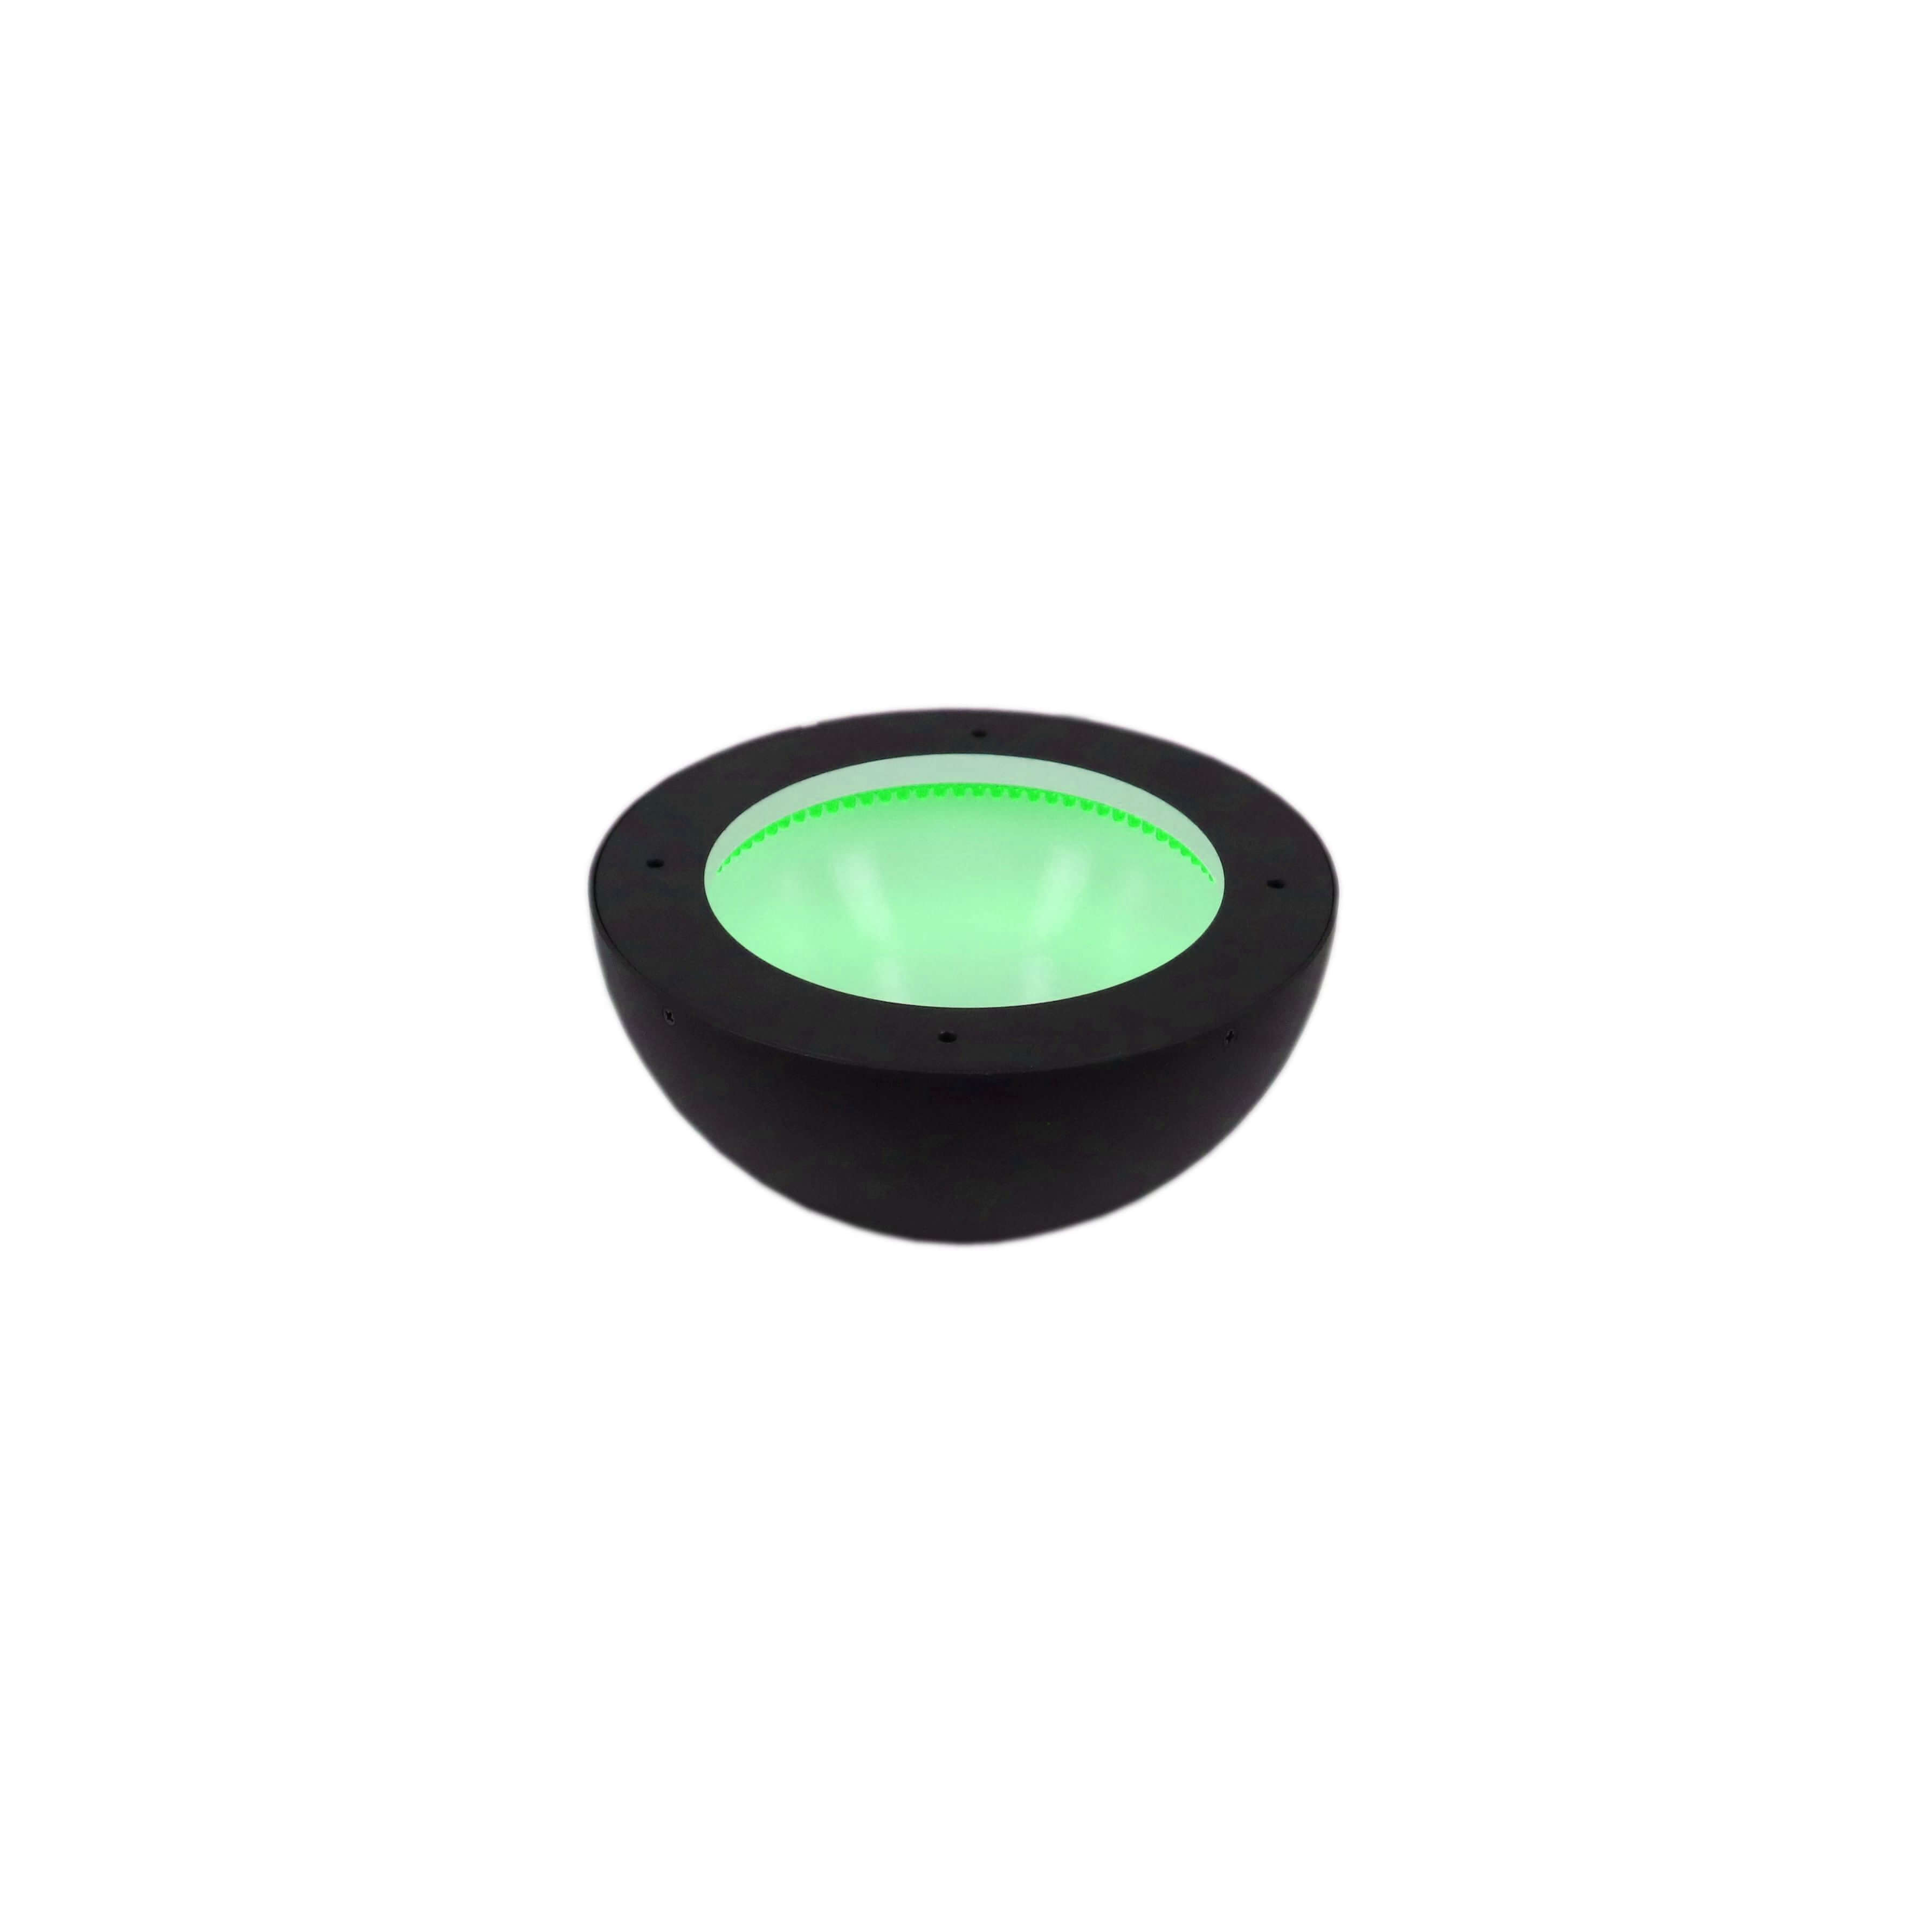 DO-156/108-24 Dome Illumination – Green